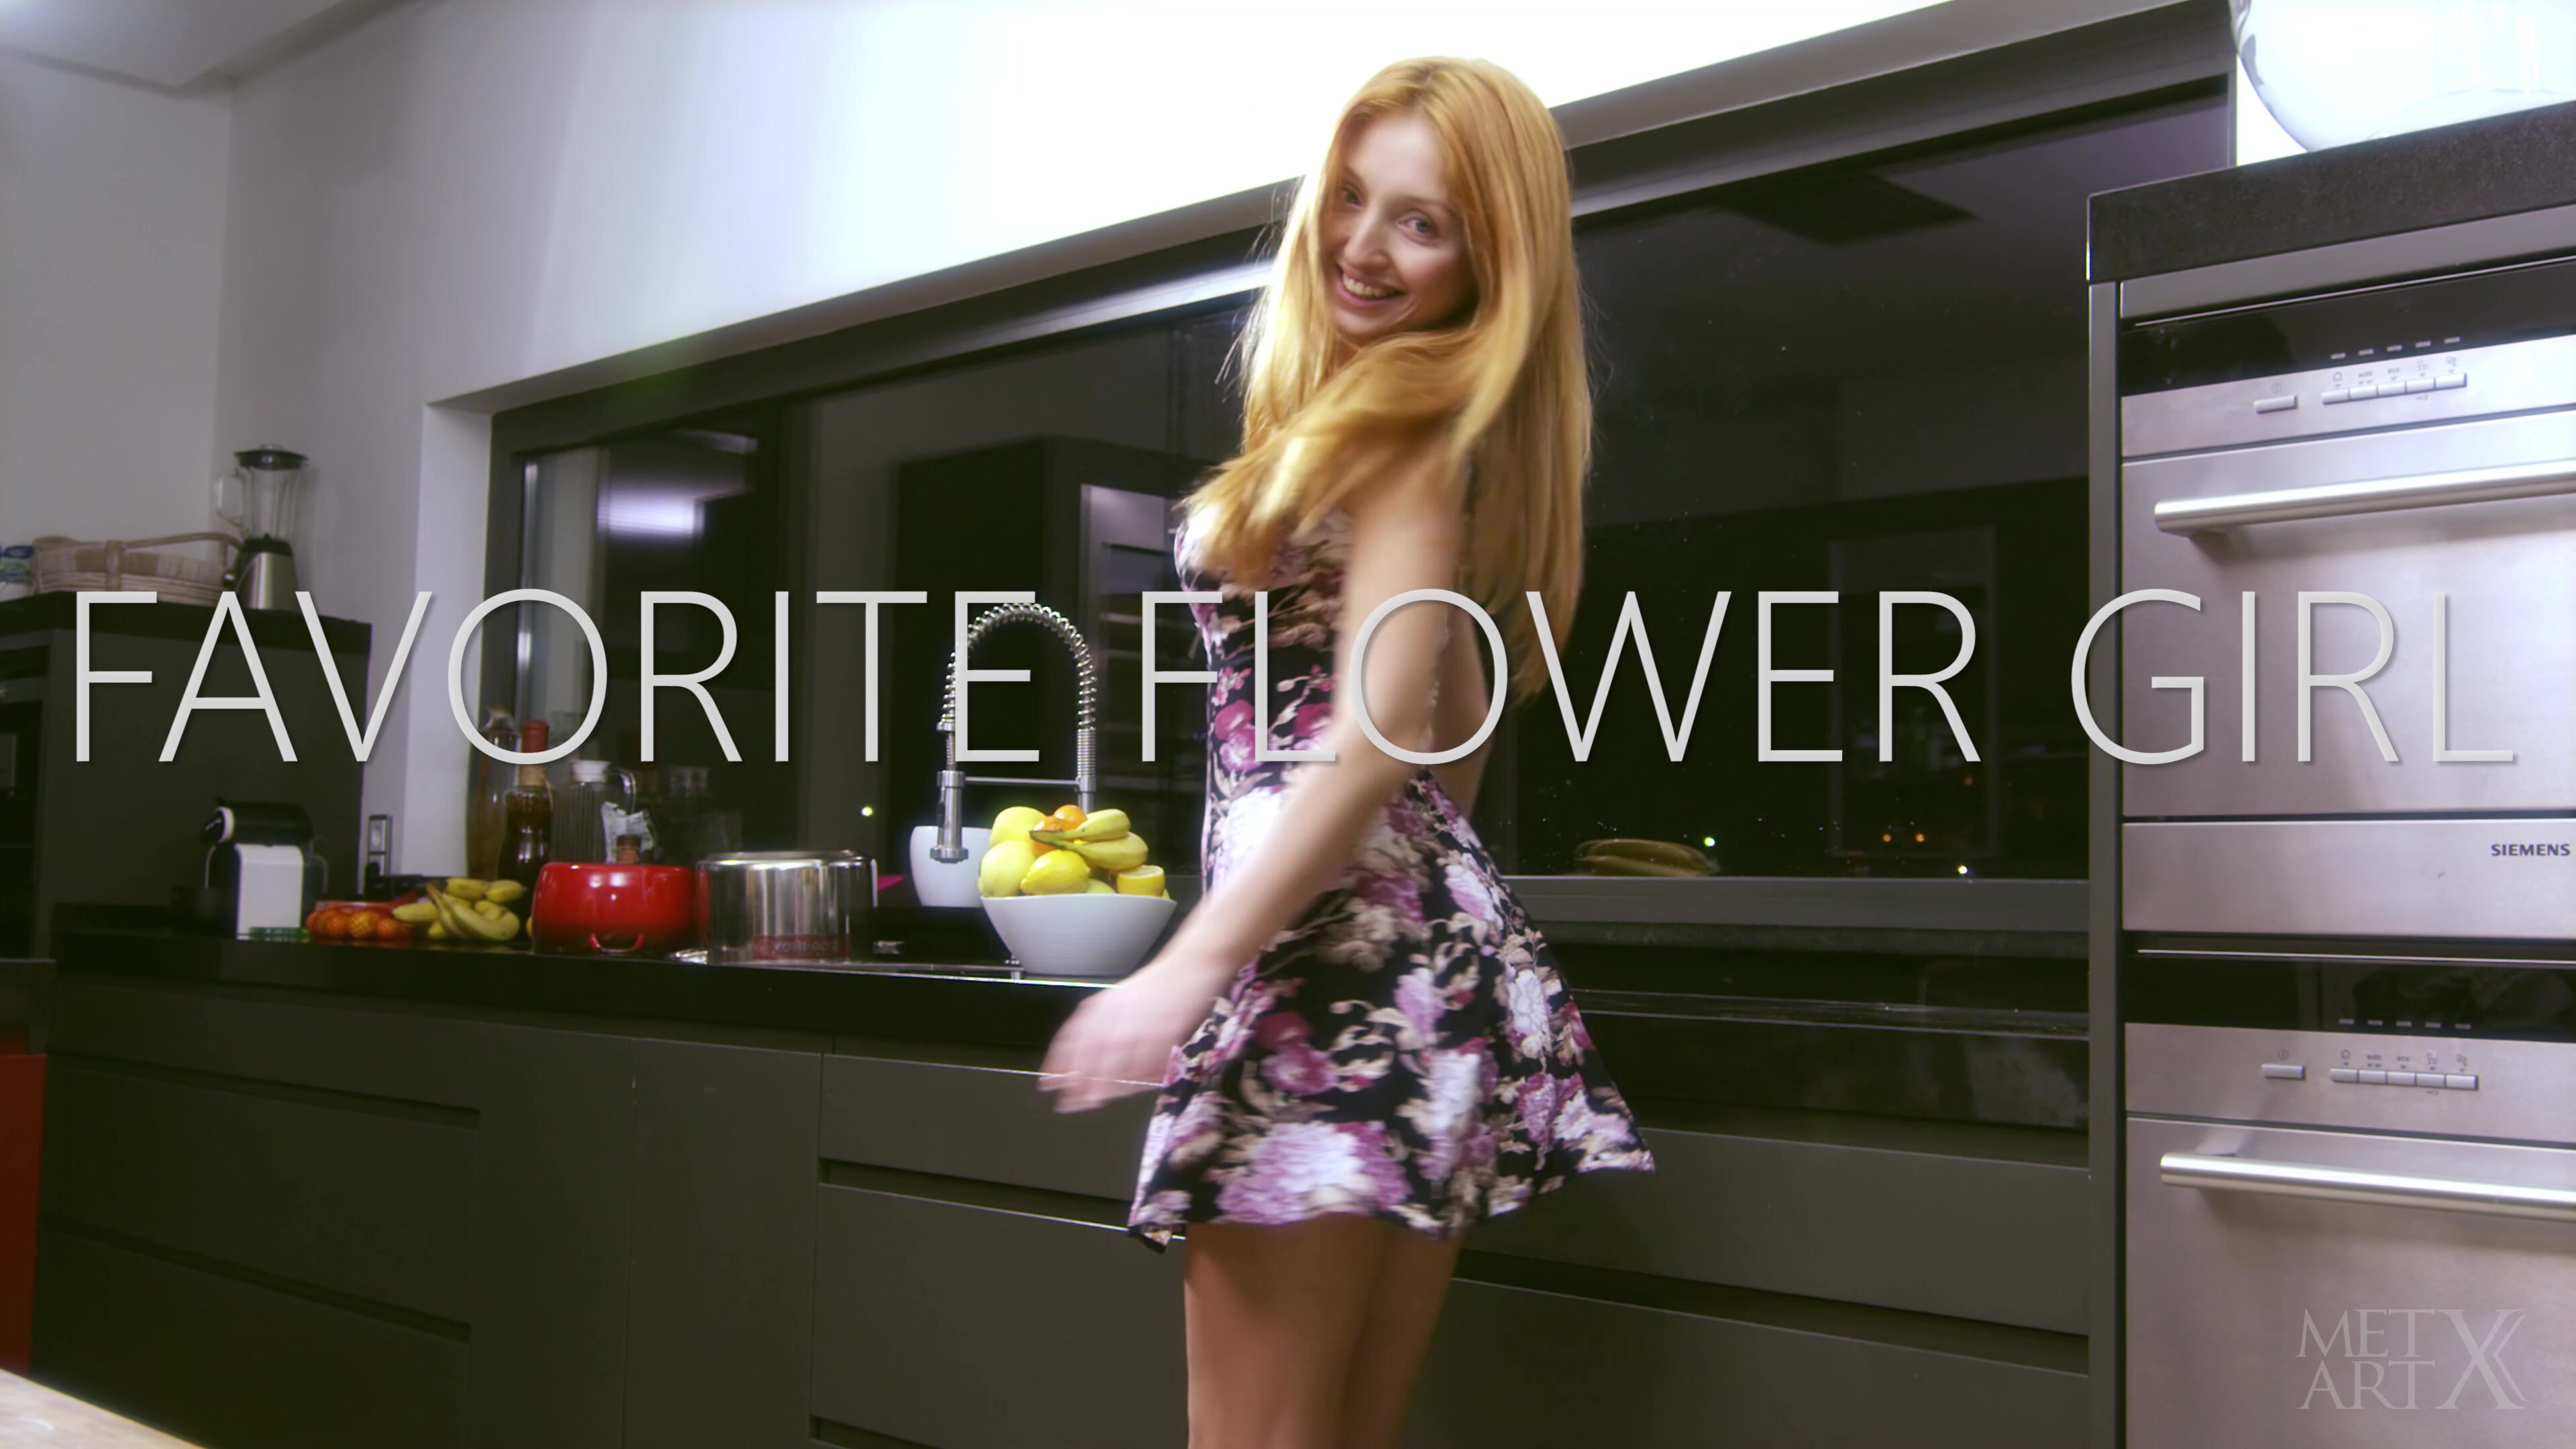 MetArtX - Favorite Flower Girl - Michelle H